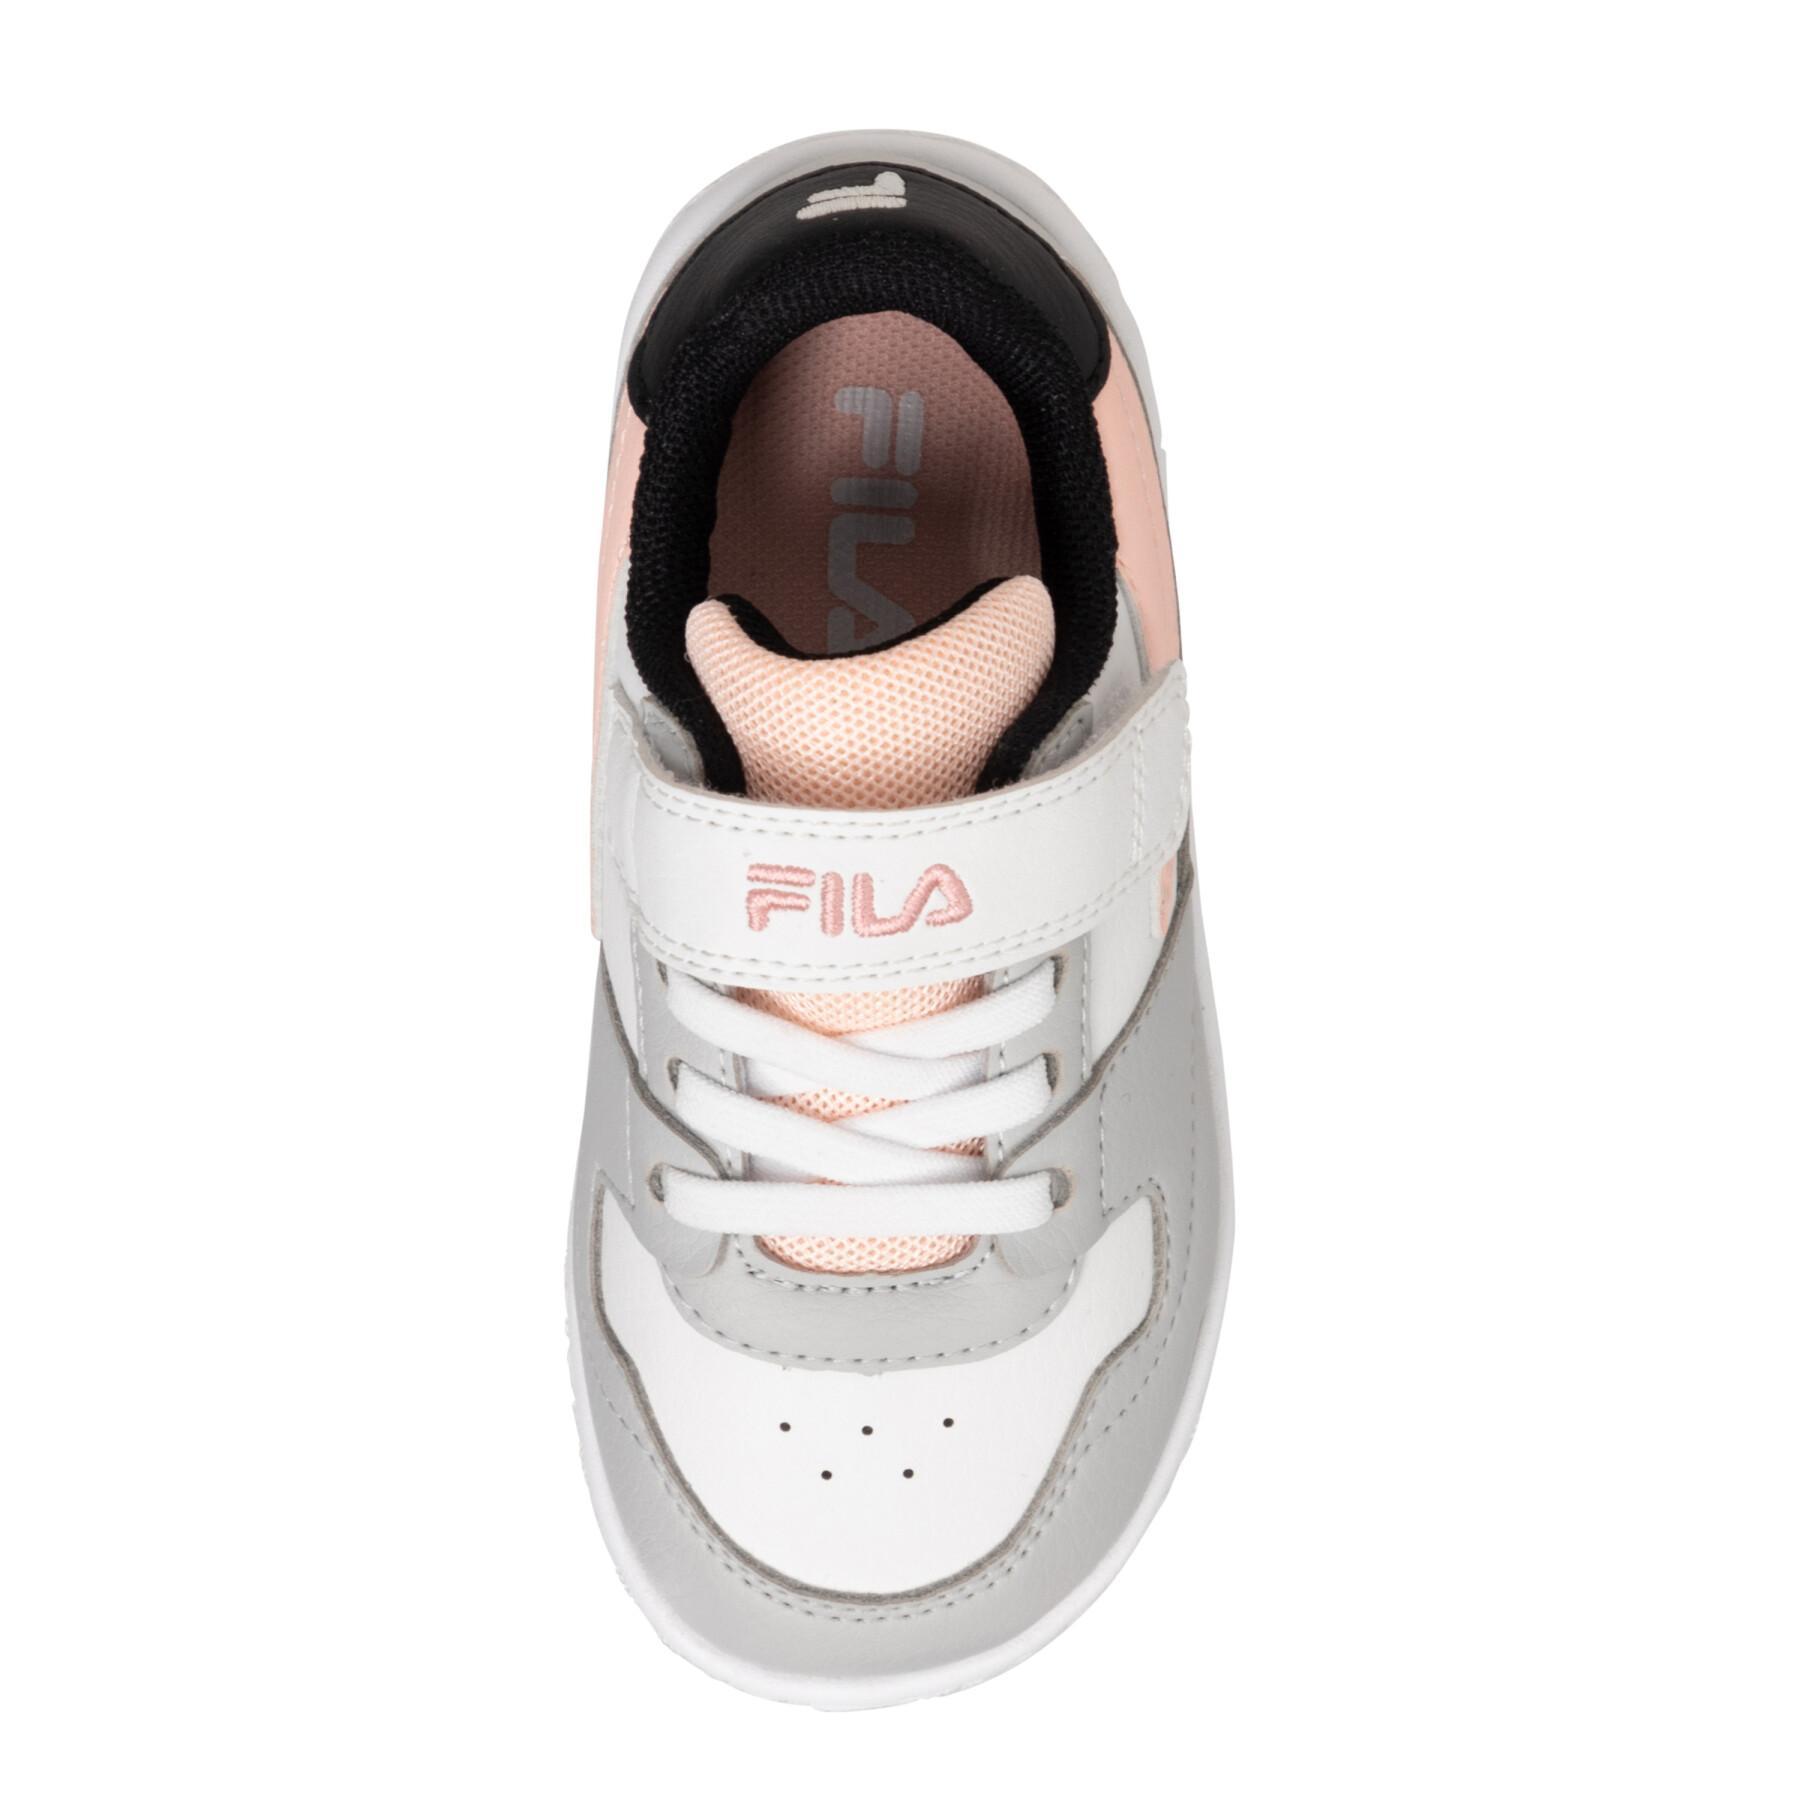 Velcro baby boy sneakers Fila Fxventuno